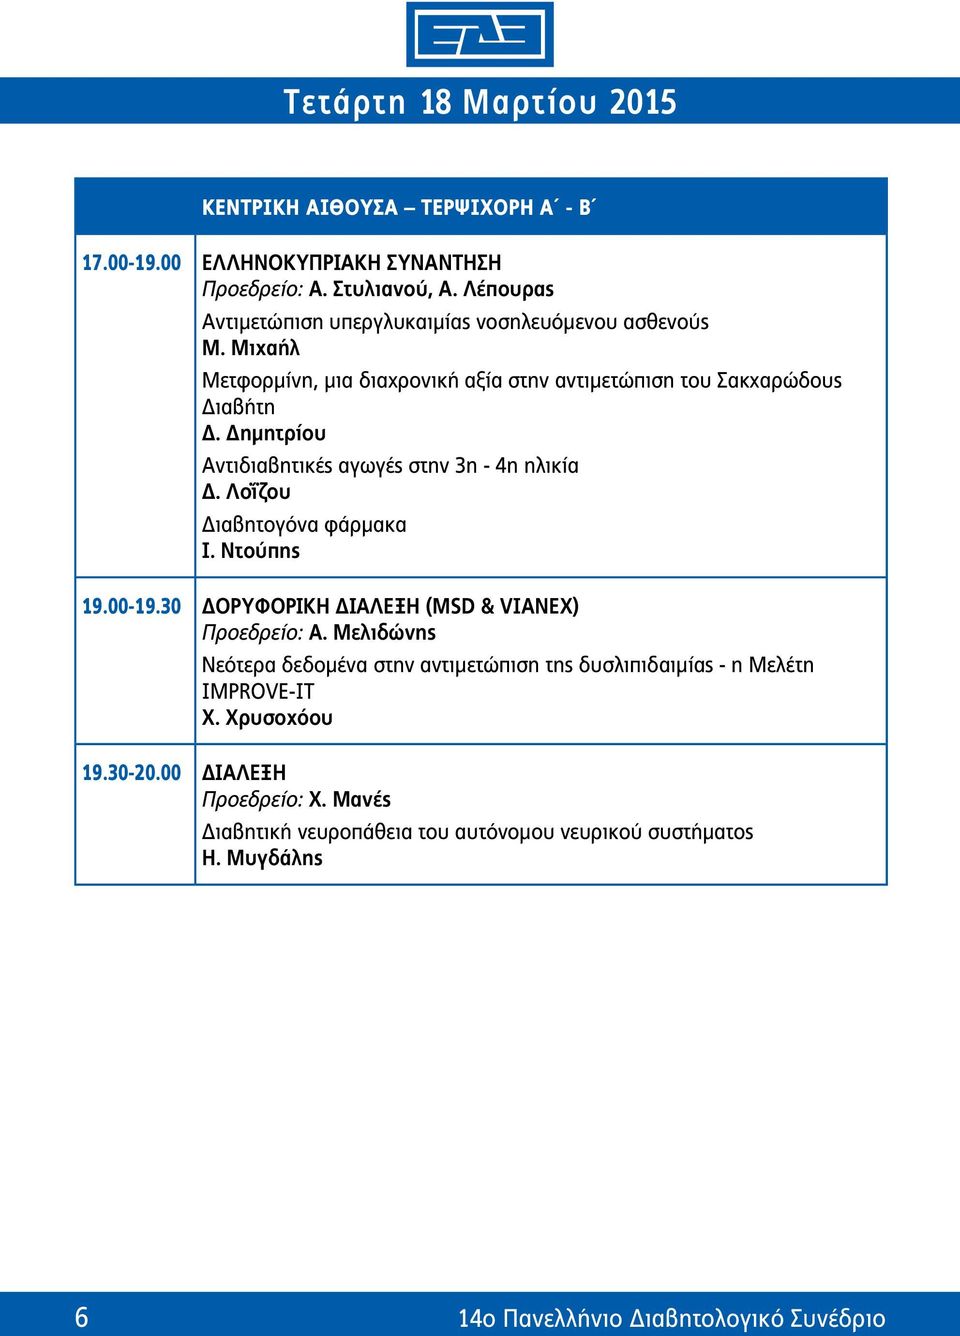 Λοΐζου Διαβητογόνα φάρμακα I. Ντούπης 19.00-19.30 Δορυφορική Διάλεξη (MSD & VIANEX) Προεδρείο: Α.